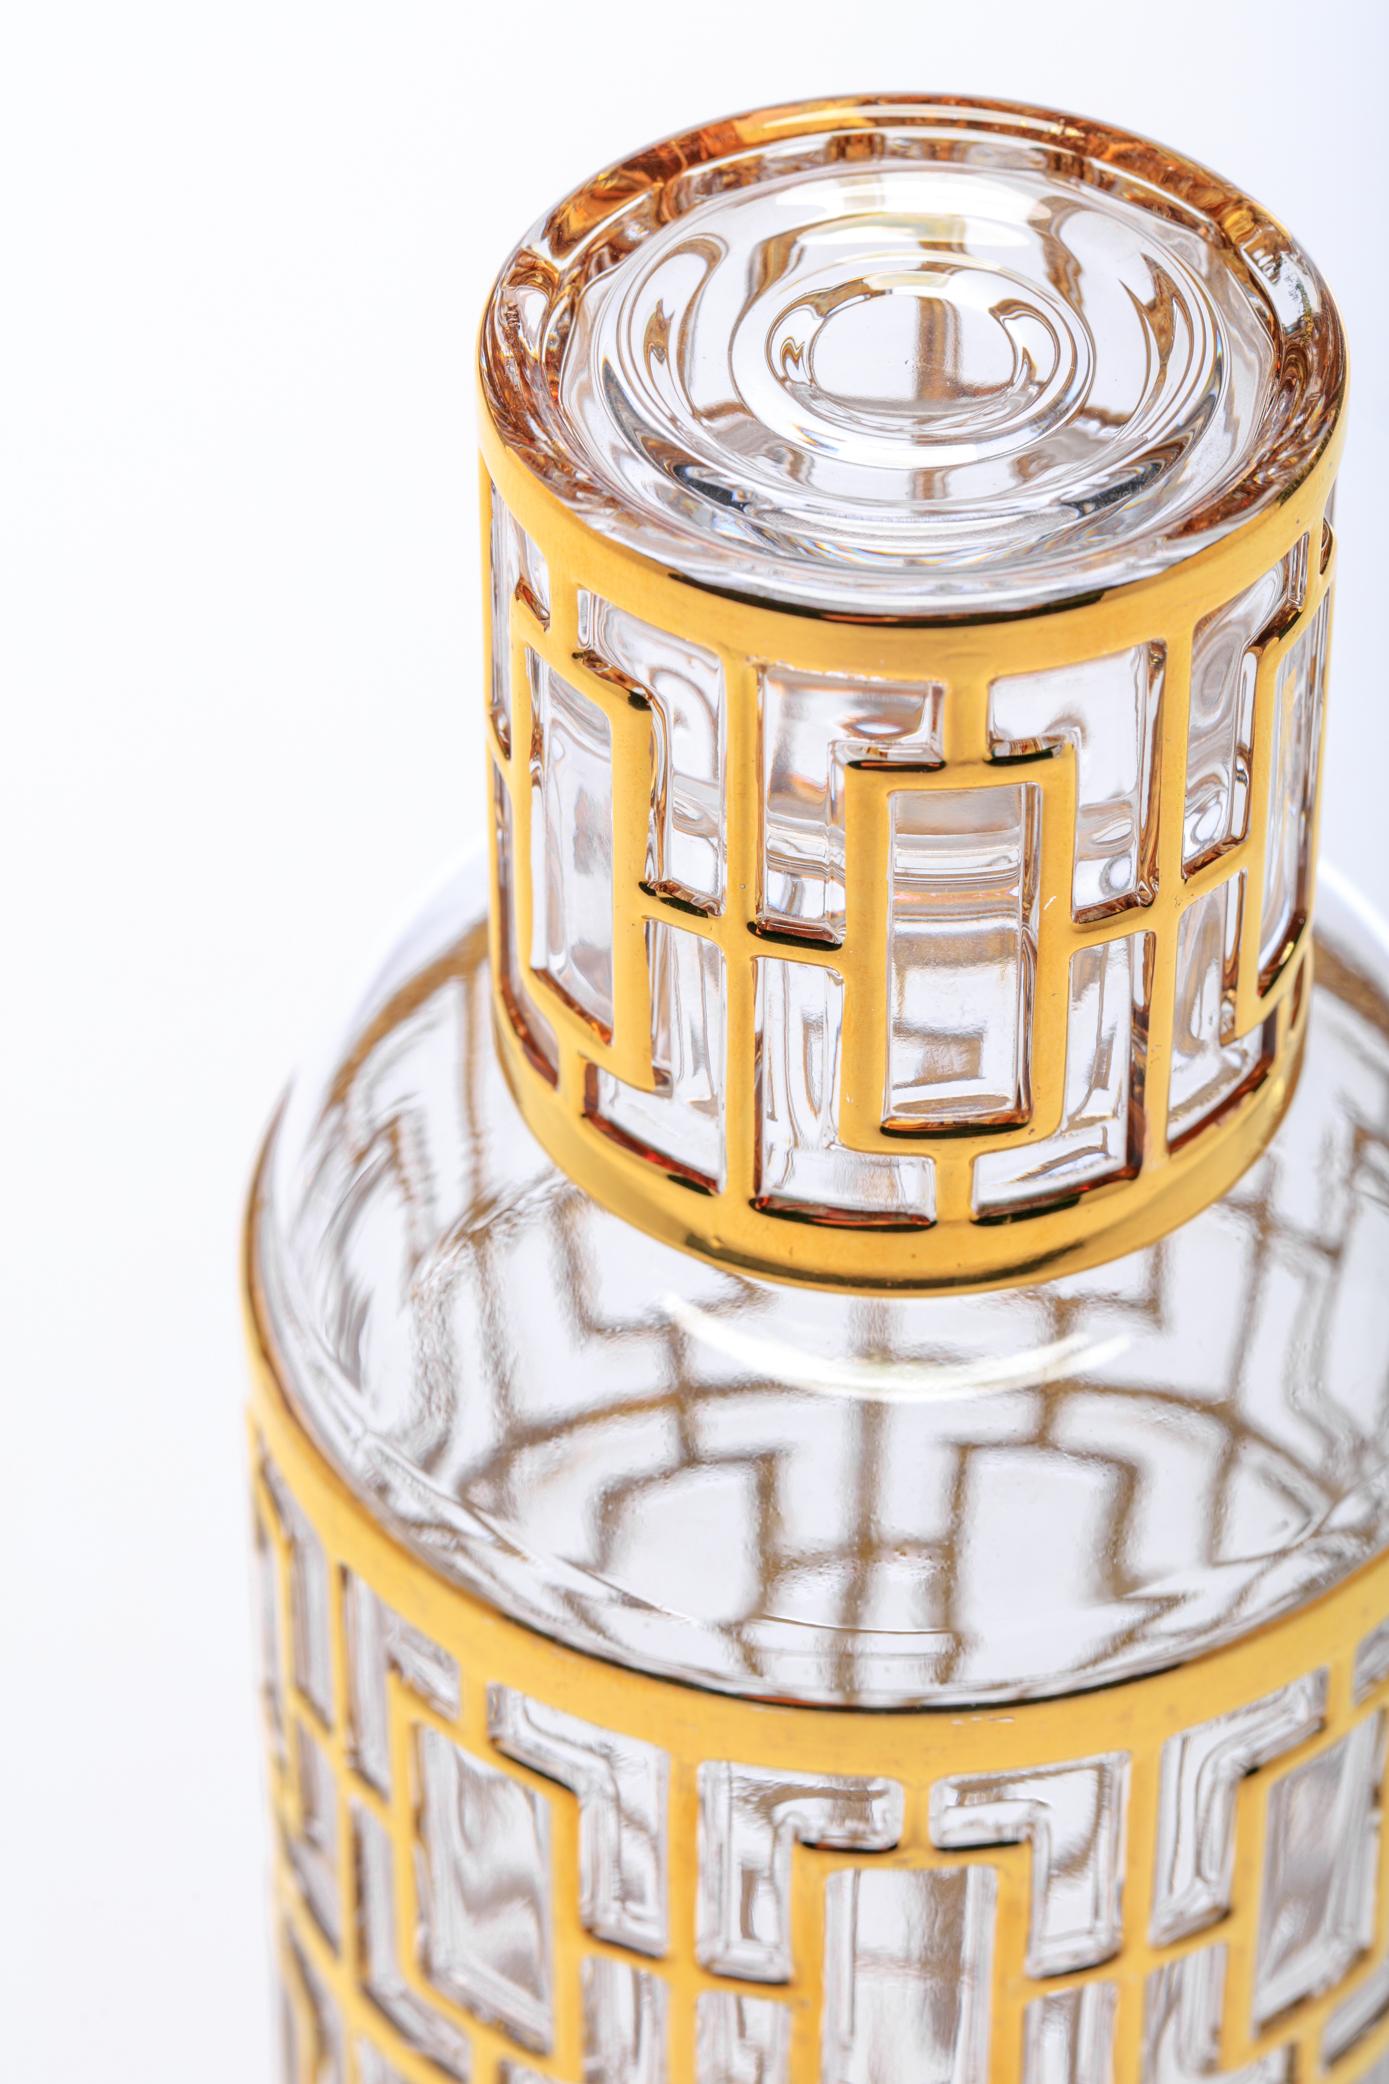 Magnifique et emblématique ensemble de bouteilles de saké à motif Shoji avec verres à saké assortis, fabriqué par Imperial Glass Company dans les années 1960. Le seul ensemble de ce type disponible - au niveau mondial - et en excellent état, sans